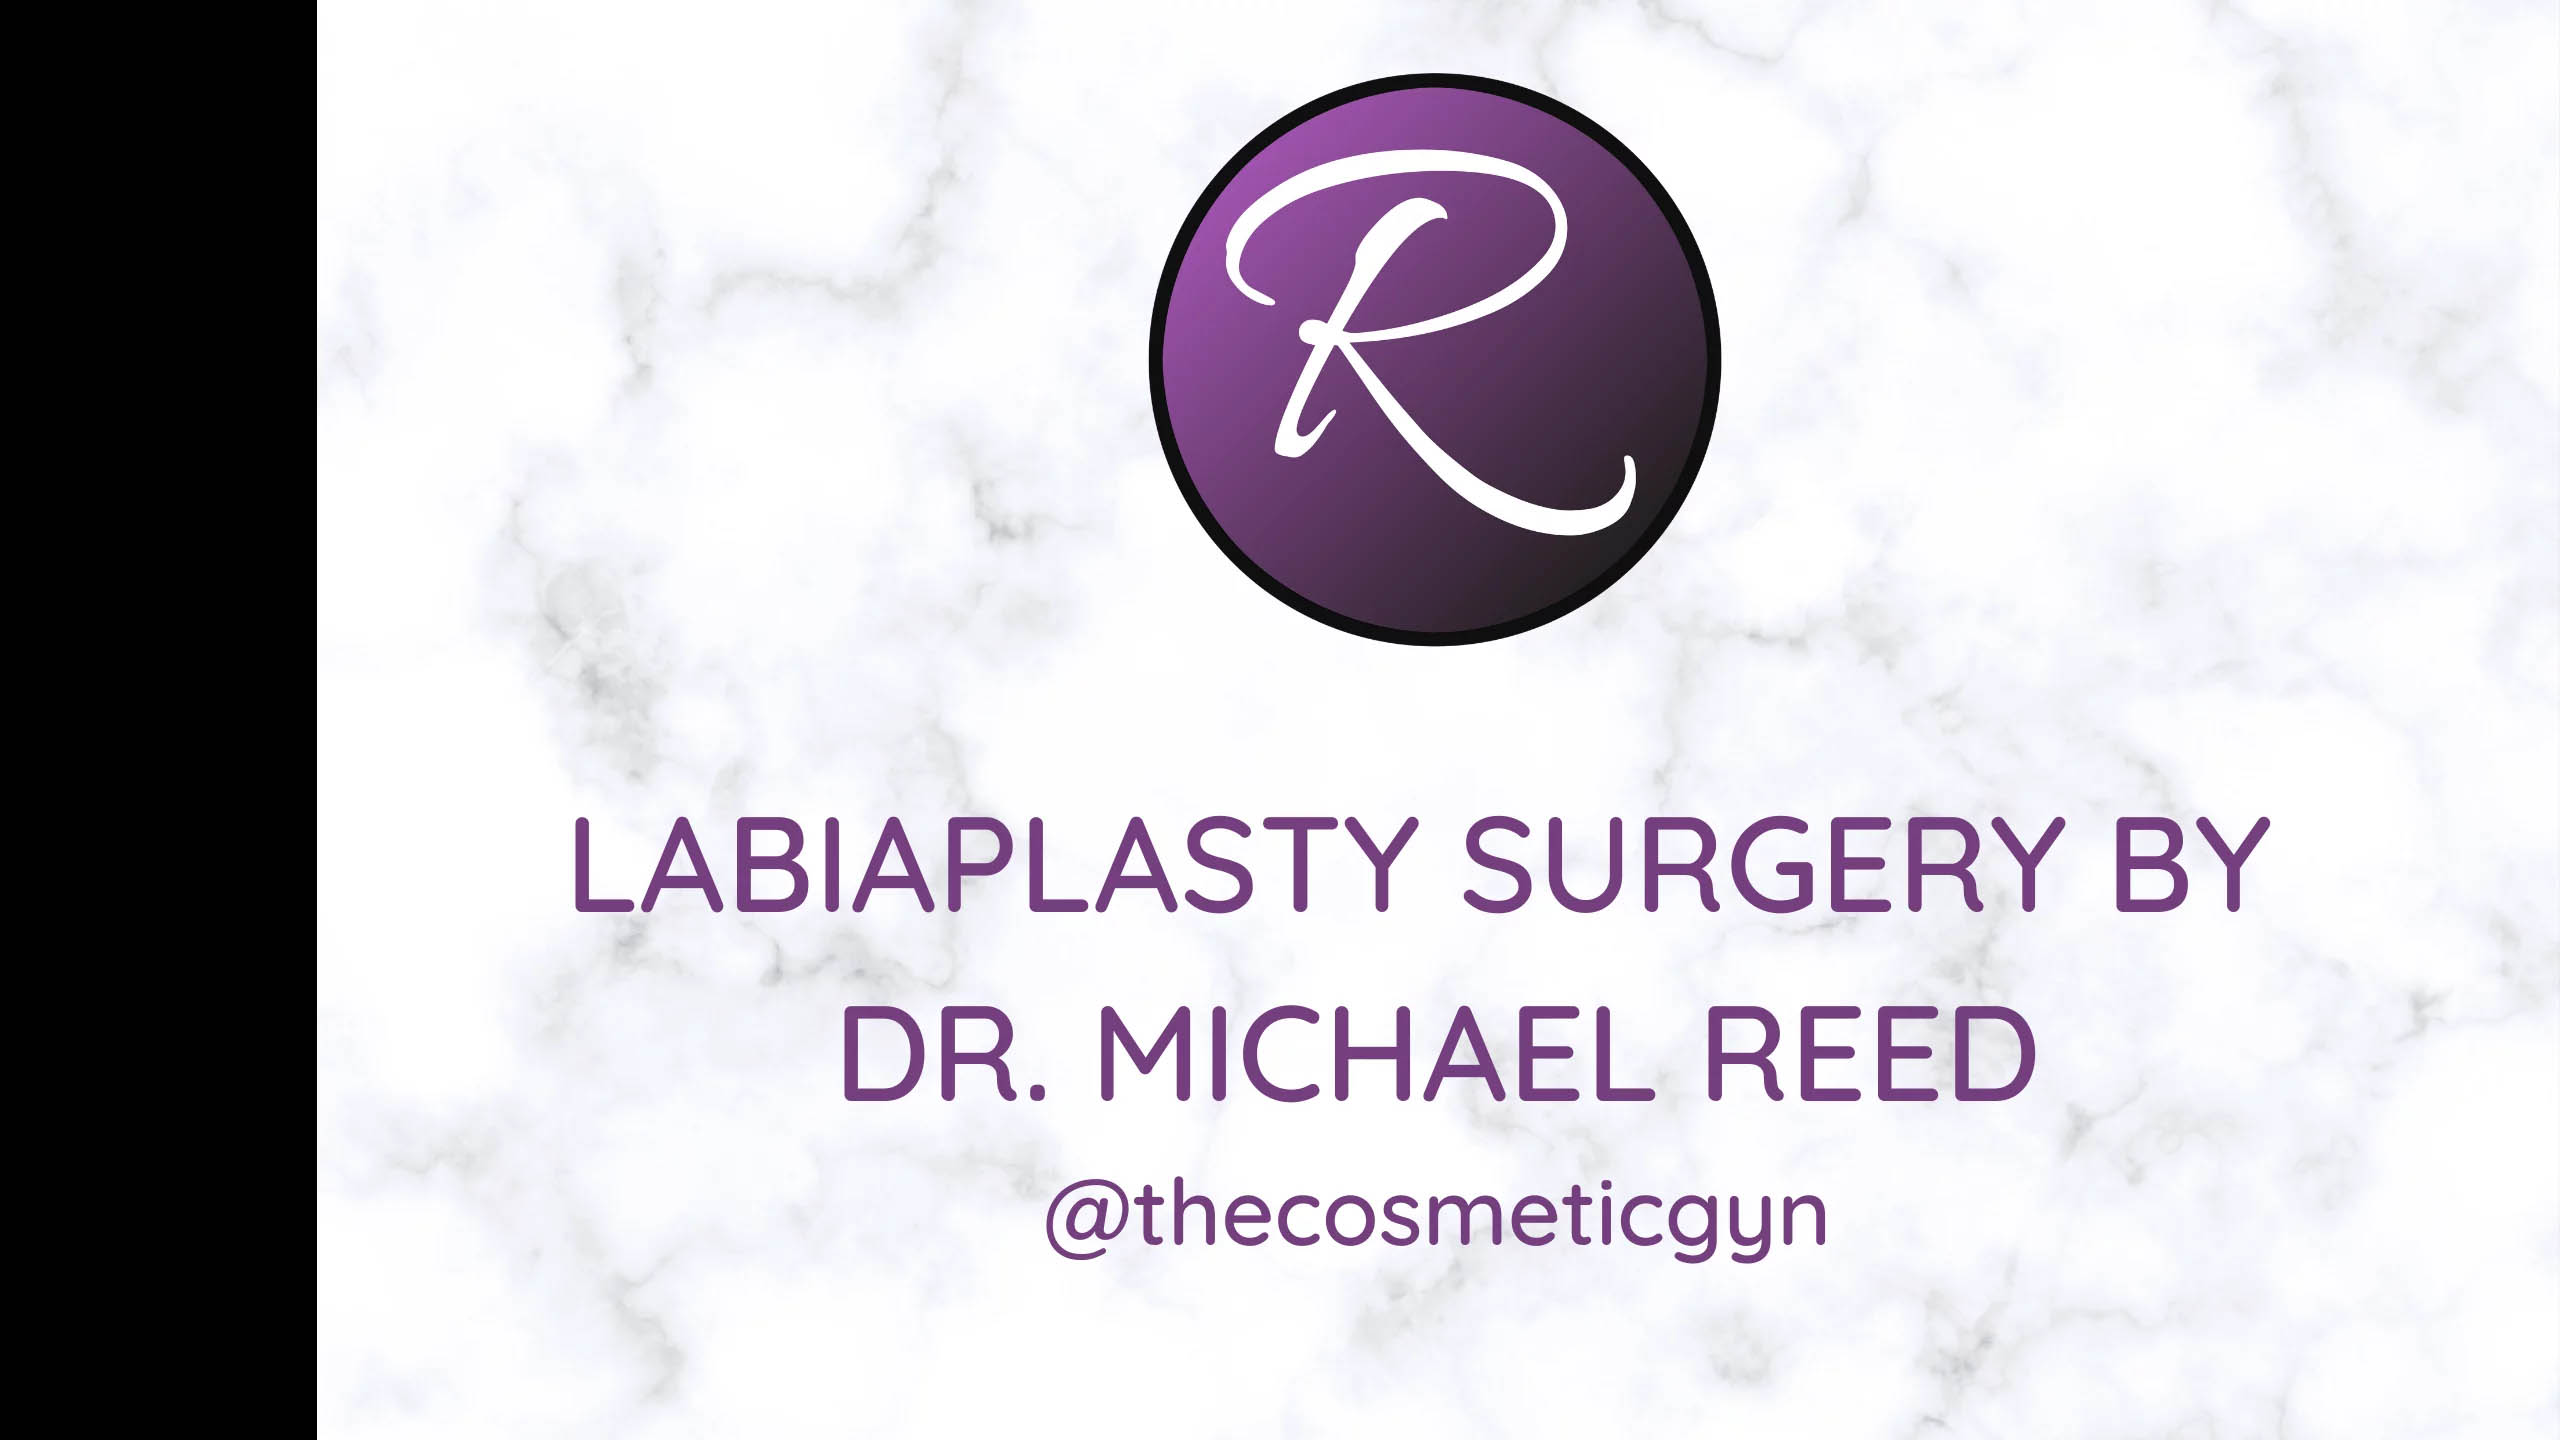 Cirugía de labioplastia por el Dr. Michael Reed